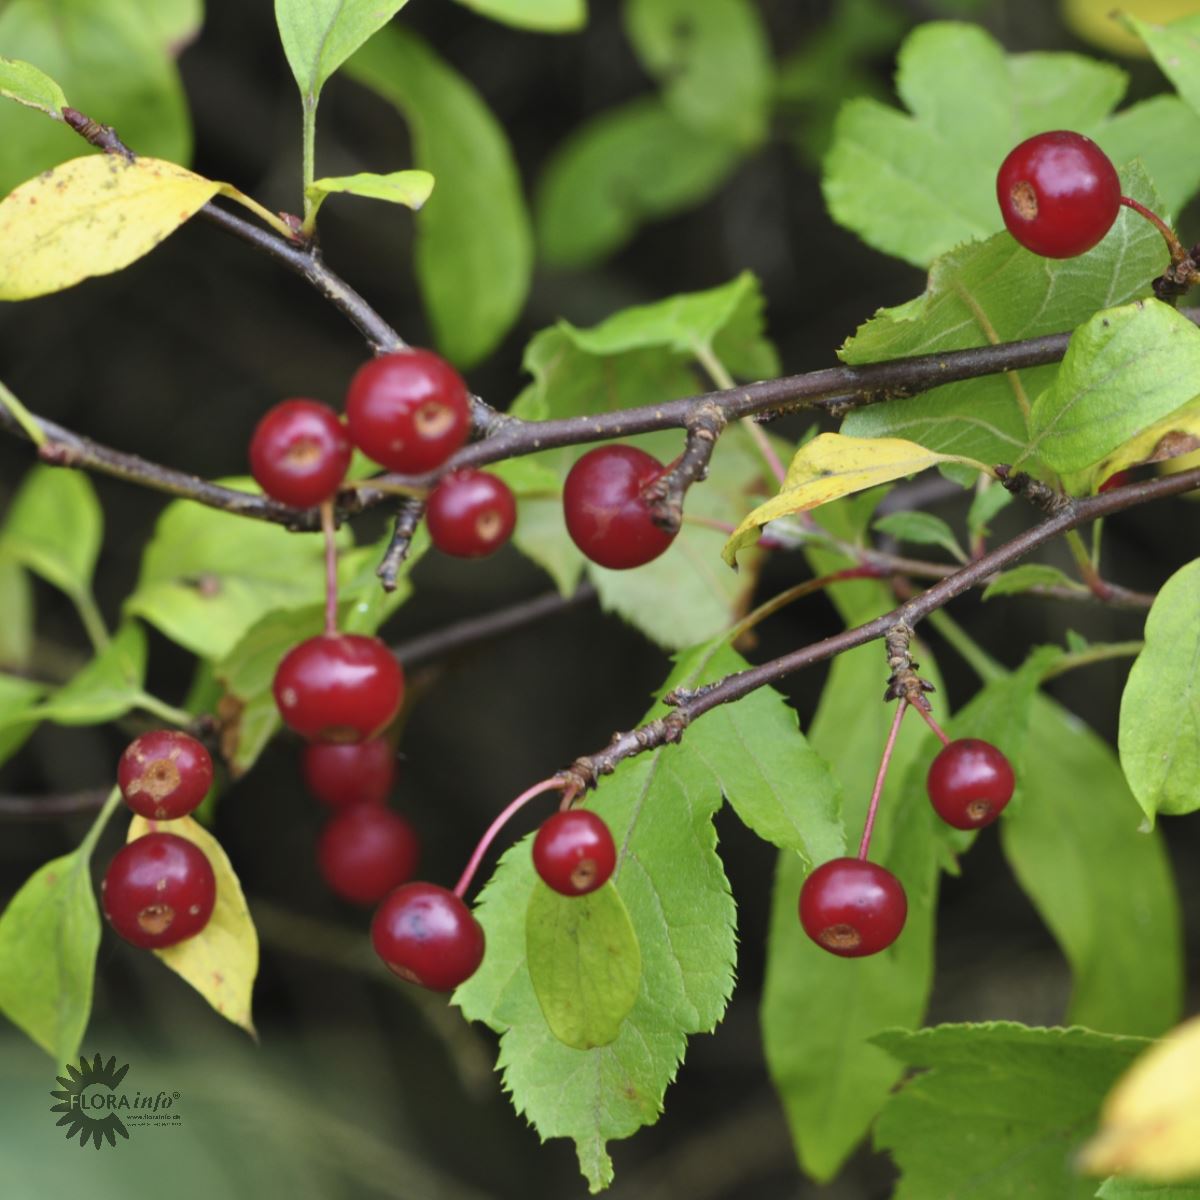 Paradisæble (Malus Toringo Var. Sargentii) også kendt som Sargentæble er et af de mindre træer som her sætter små bær eller frugter der er røde og står flot op i mod de fine grønne blade